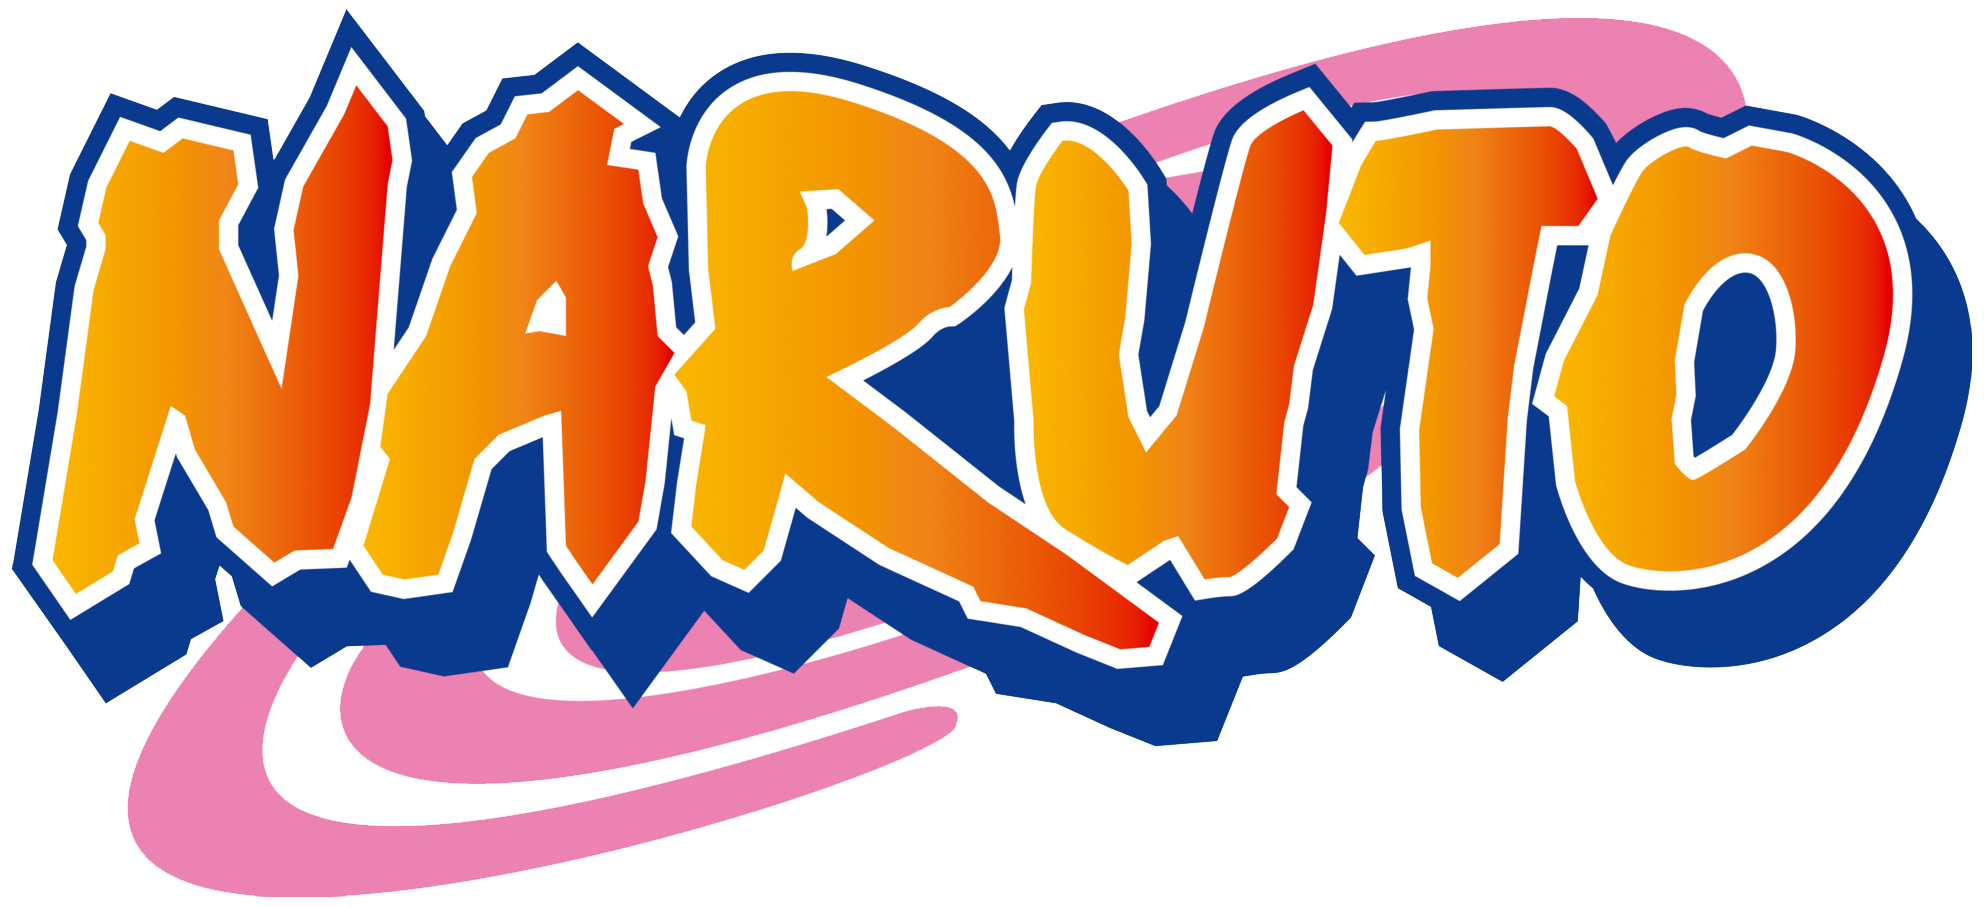 Naruto logo transparent